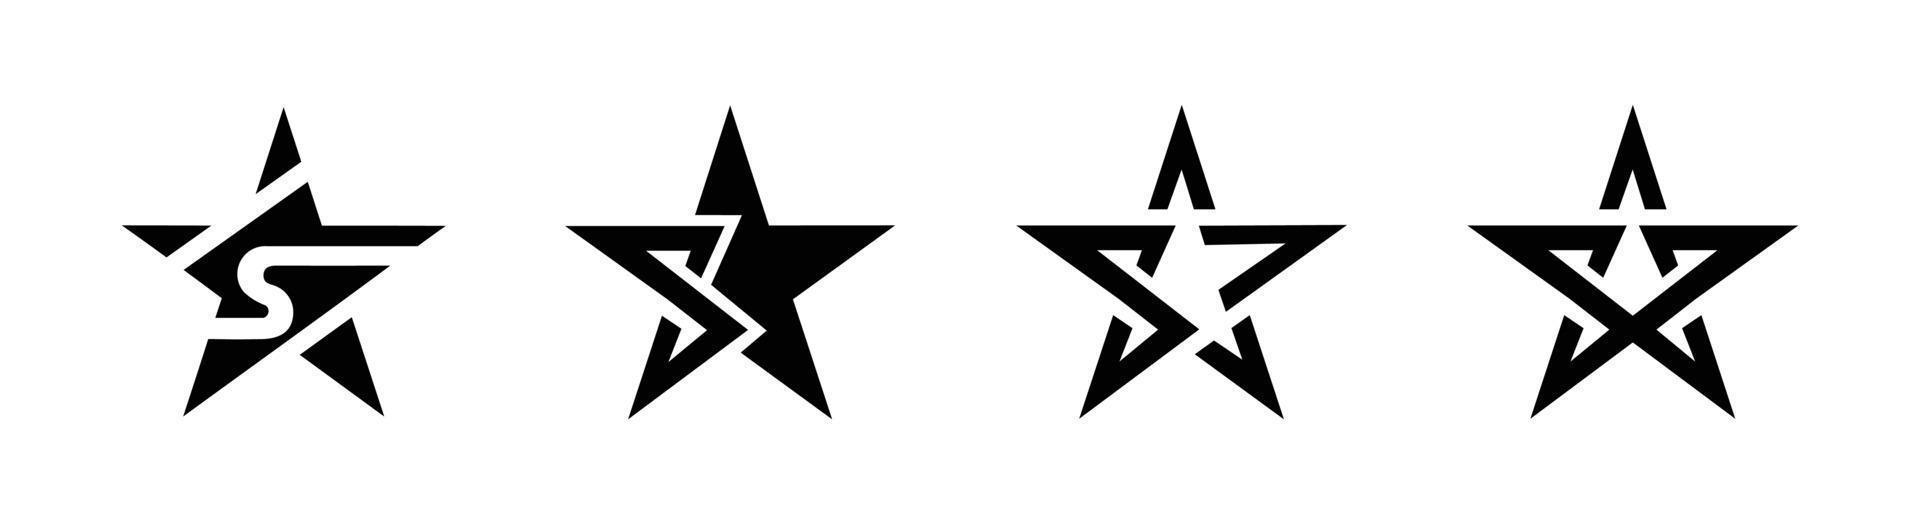 vettore modello logo stella, icone vettoriali stella set di simboli isolati.